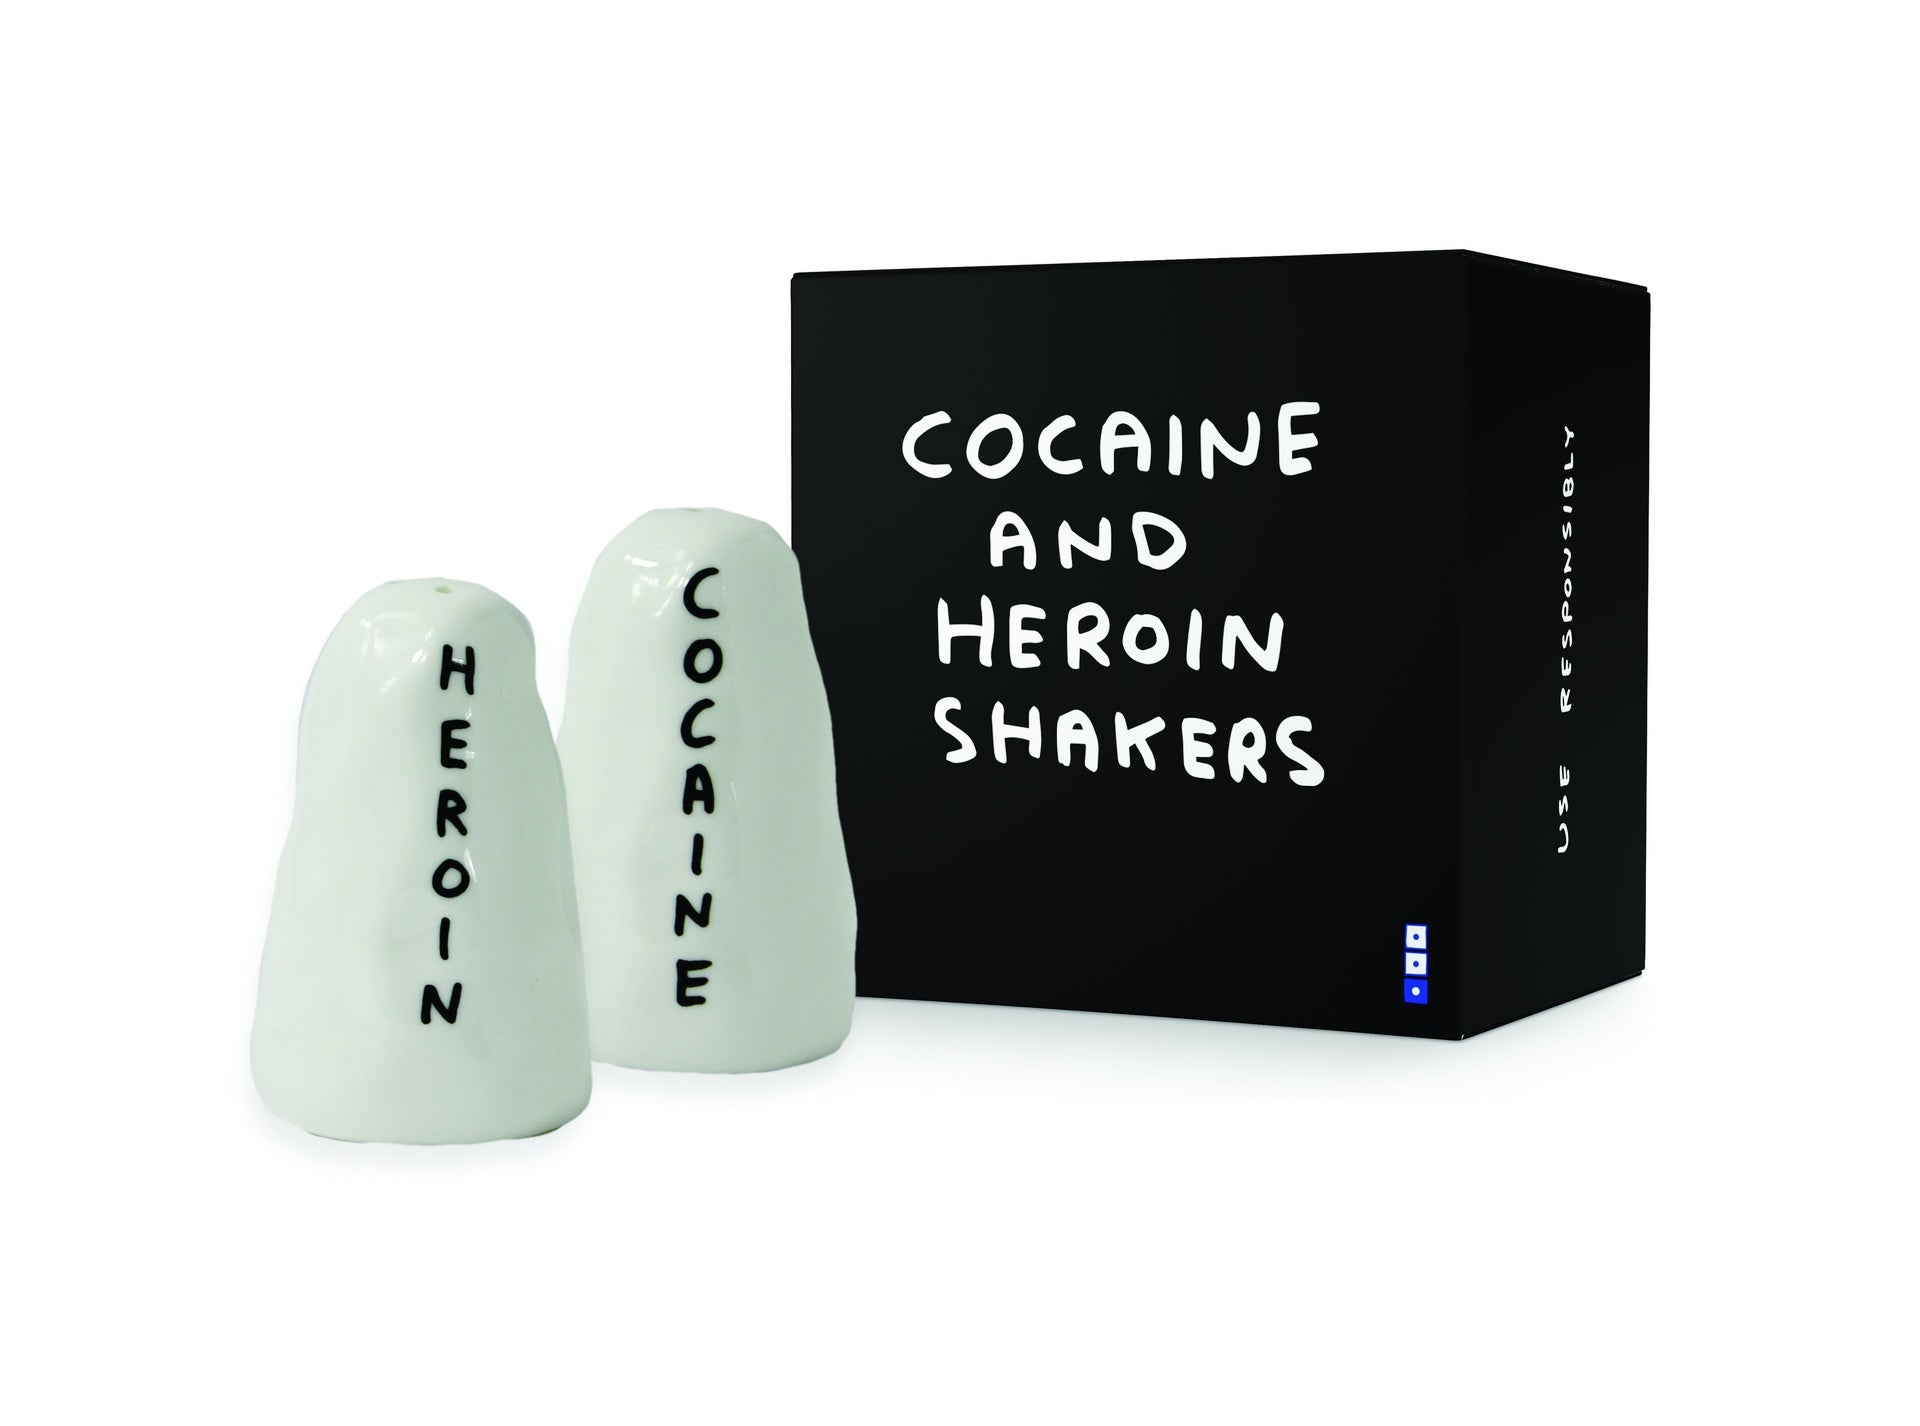 David Shrigley x Cocaine & Heroin Shakers